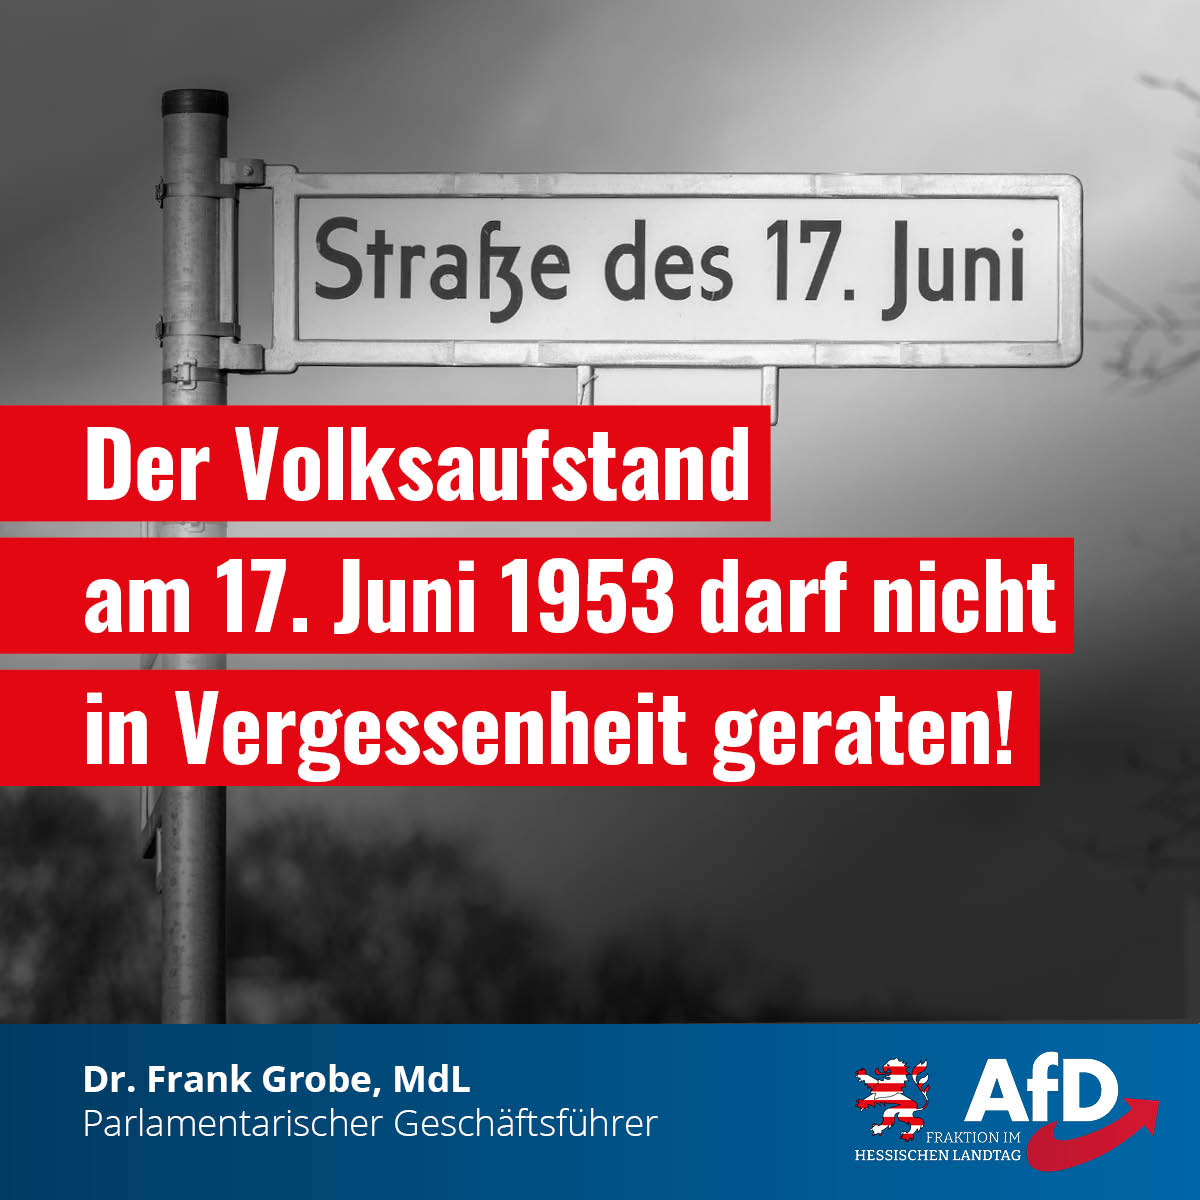 Mehr über den Artikel erfahren Der Volksaufstand in der DDR sollte wieder stärker im öffentlichen Bewusstsein verankert und in den Schulen jährlich ein Aktionstag zum Gedenken eingeführt werden.